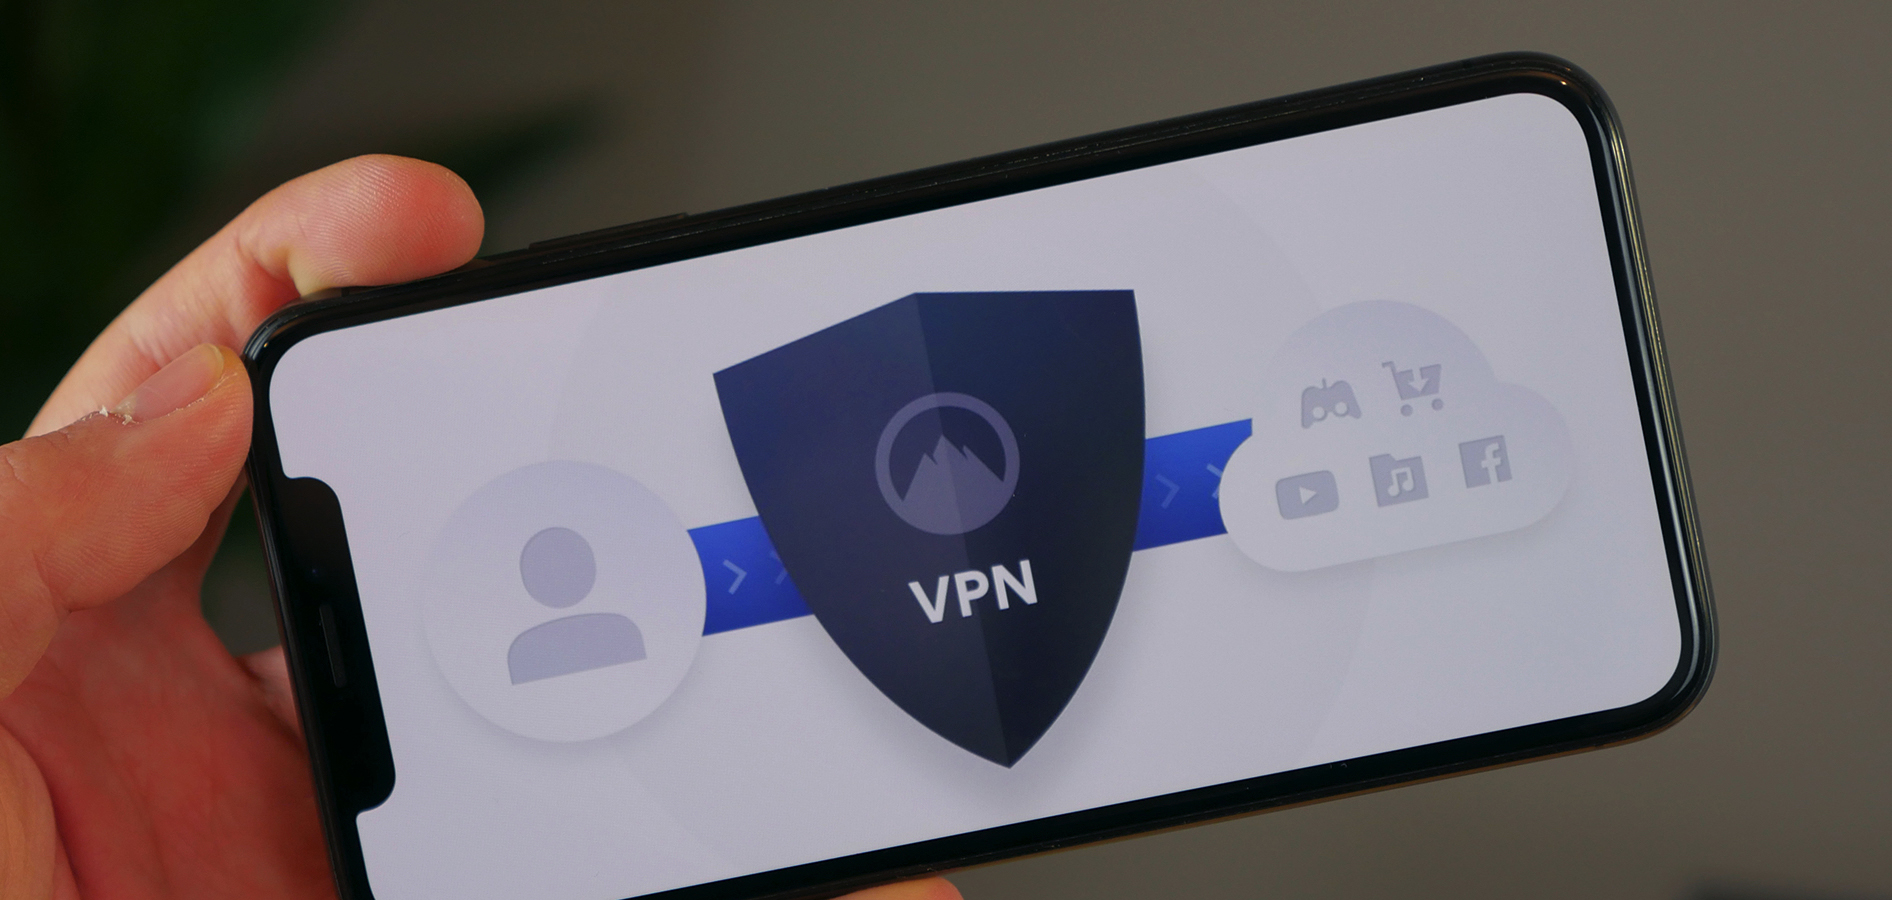 Специалисты предупредили об опасности использования бесплатного VPN